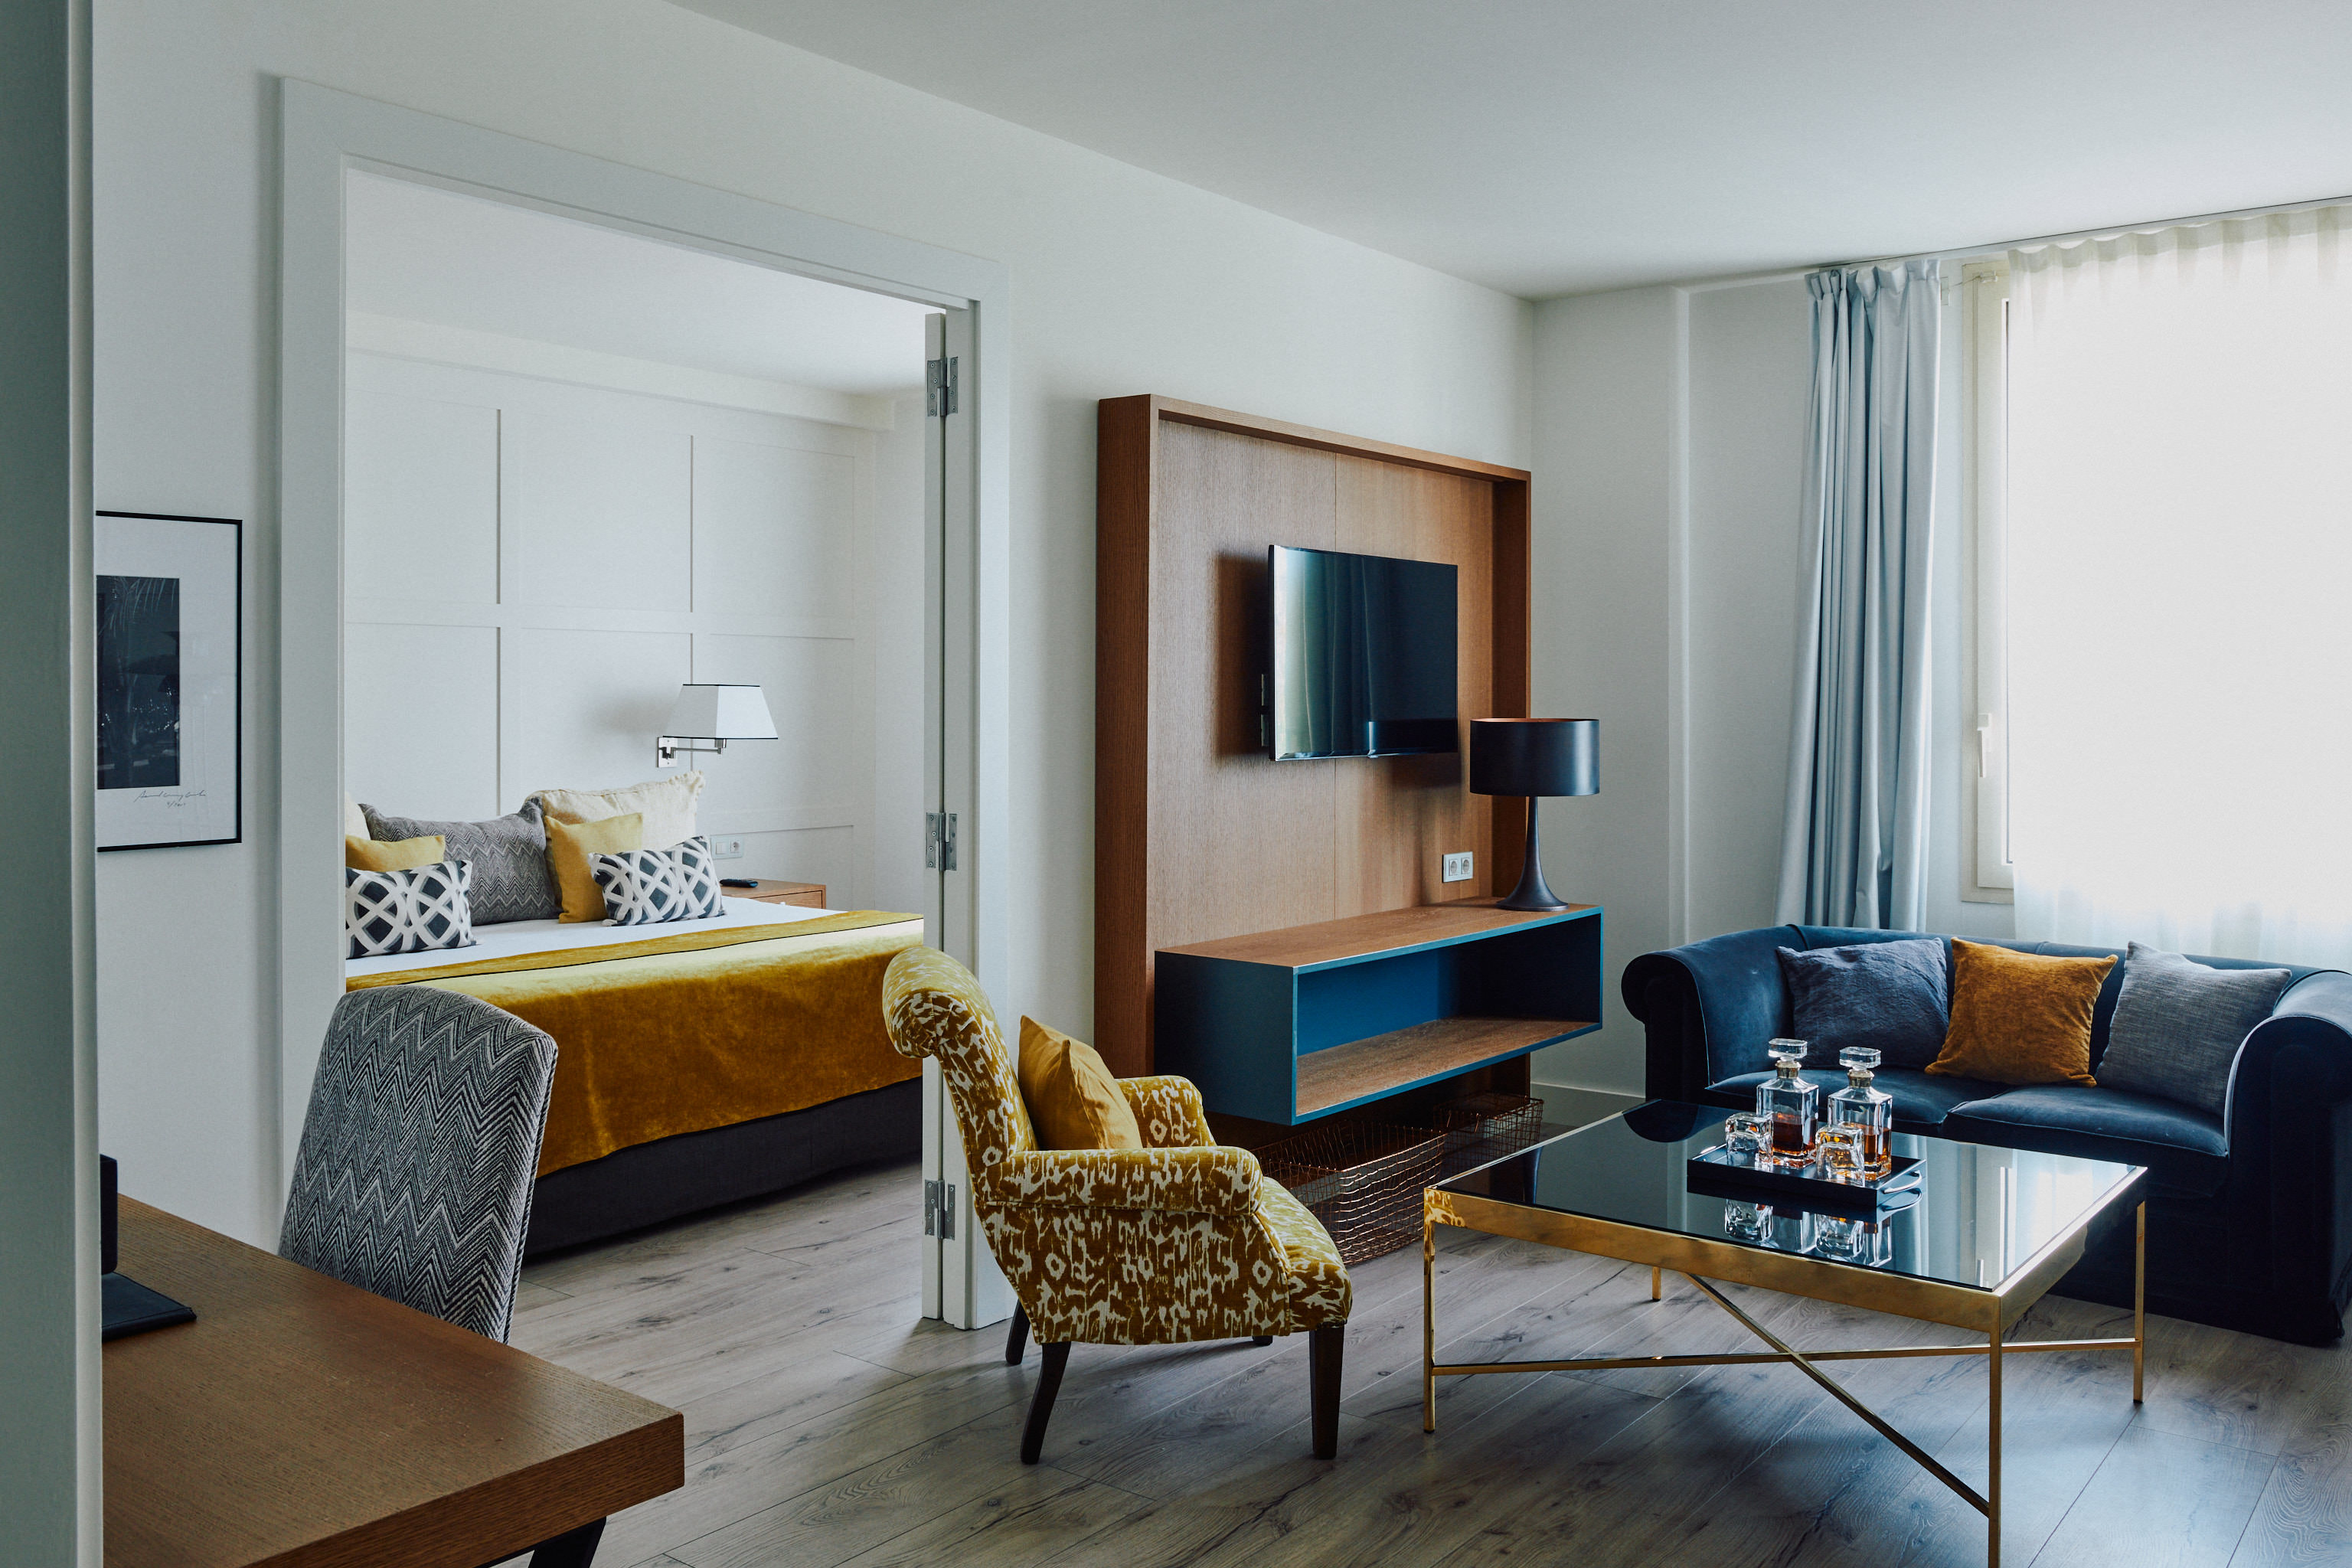 Exklusive 45 m2 große Suiten mit Blick auf die Palau Robert Gardens. Ideal für einen Luxusurlaub oder um all Ihren Komfort auf Ihrer Geschäftsreise zu haben.